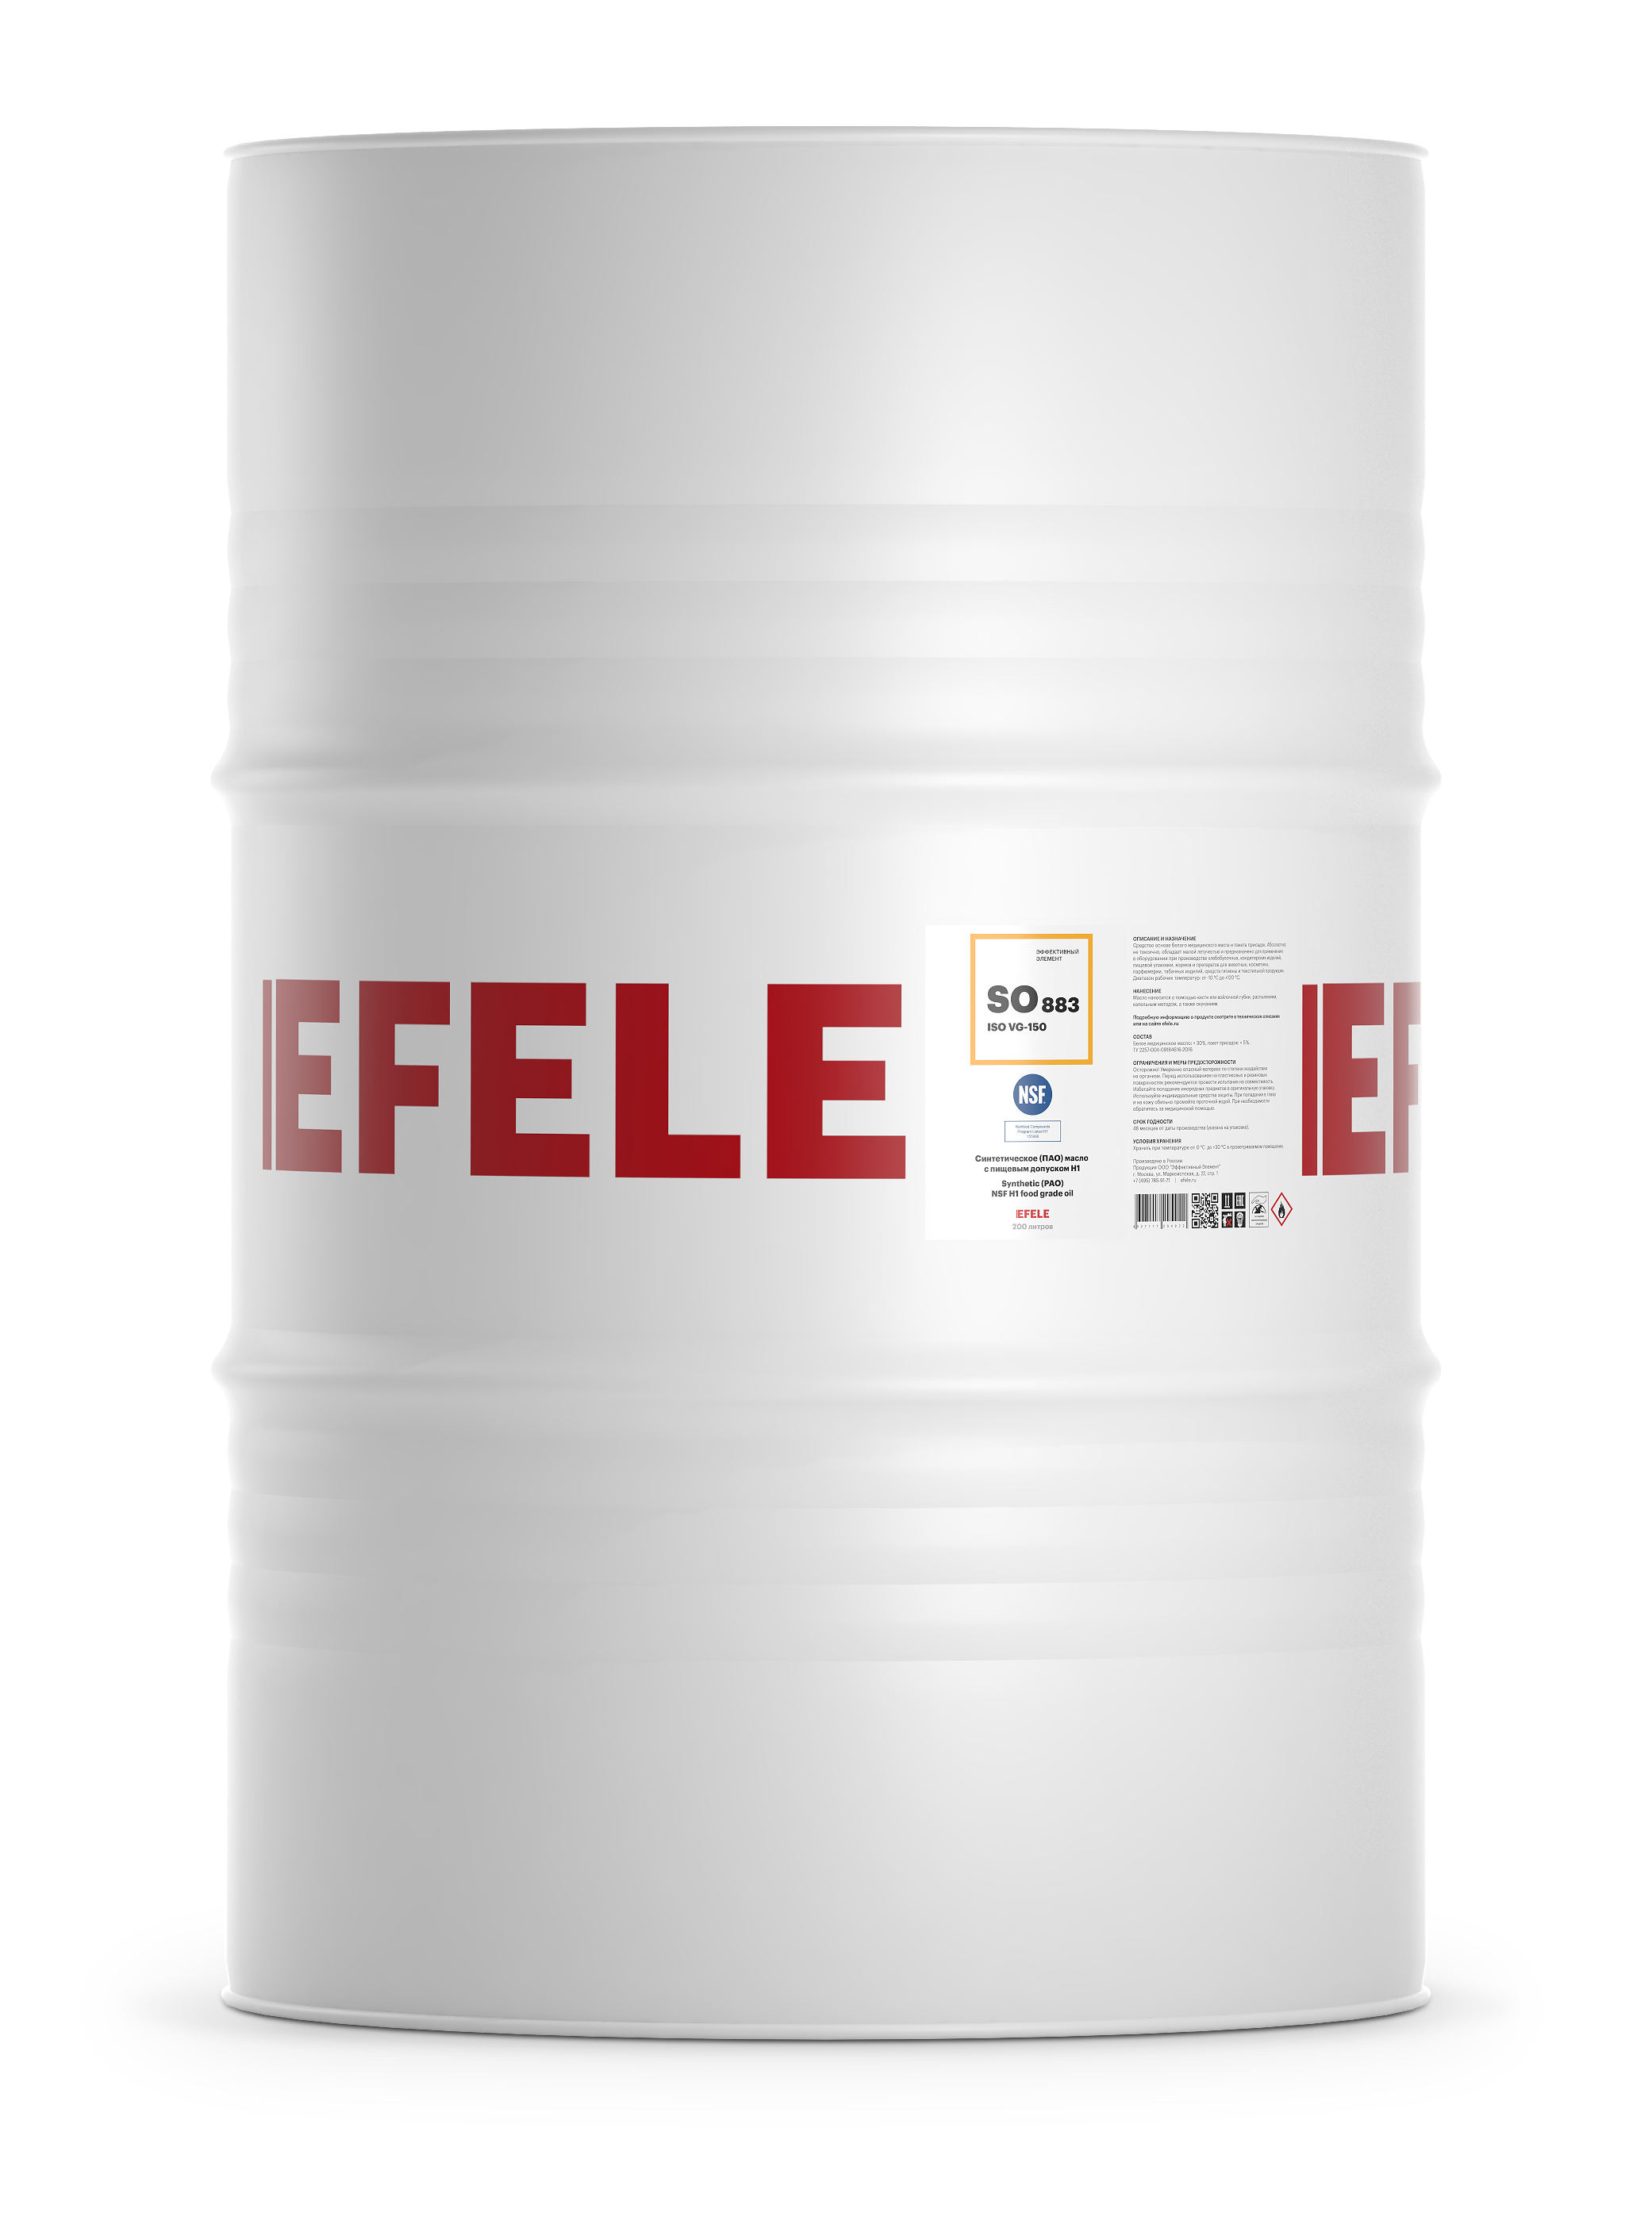 Синтетическое (ПАО) масло с пищевым допуском NSF H1 EFELE SO-883 VG-150 (бочка 200 л)